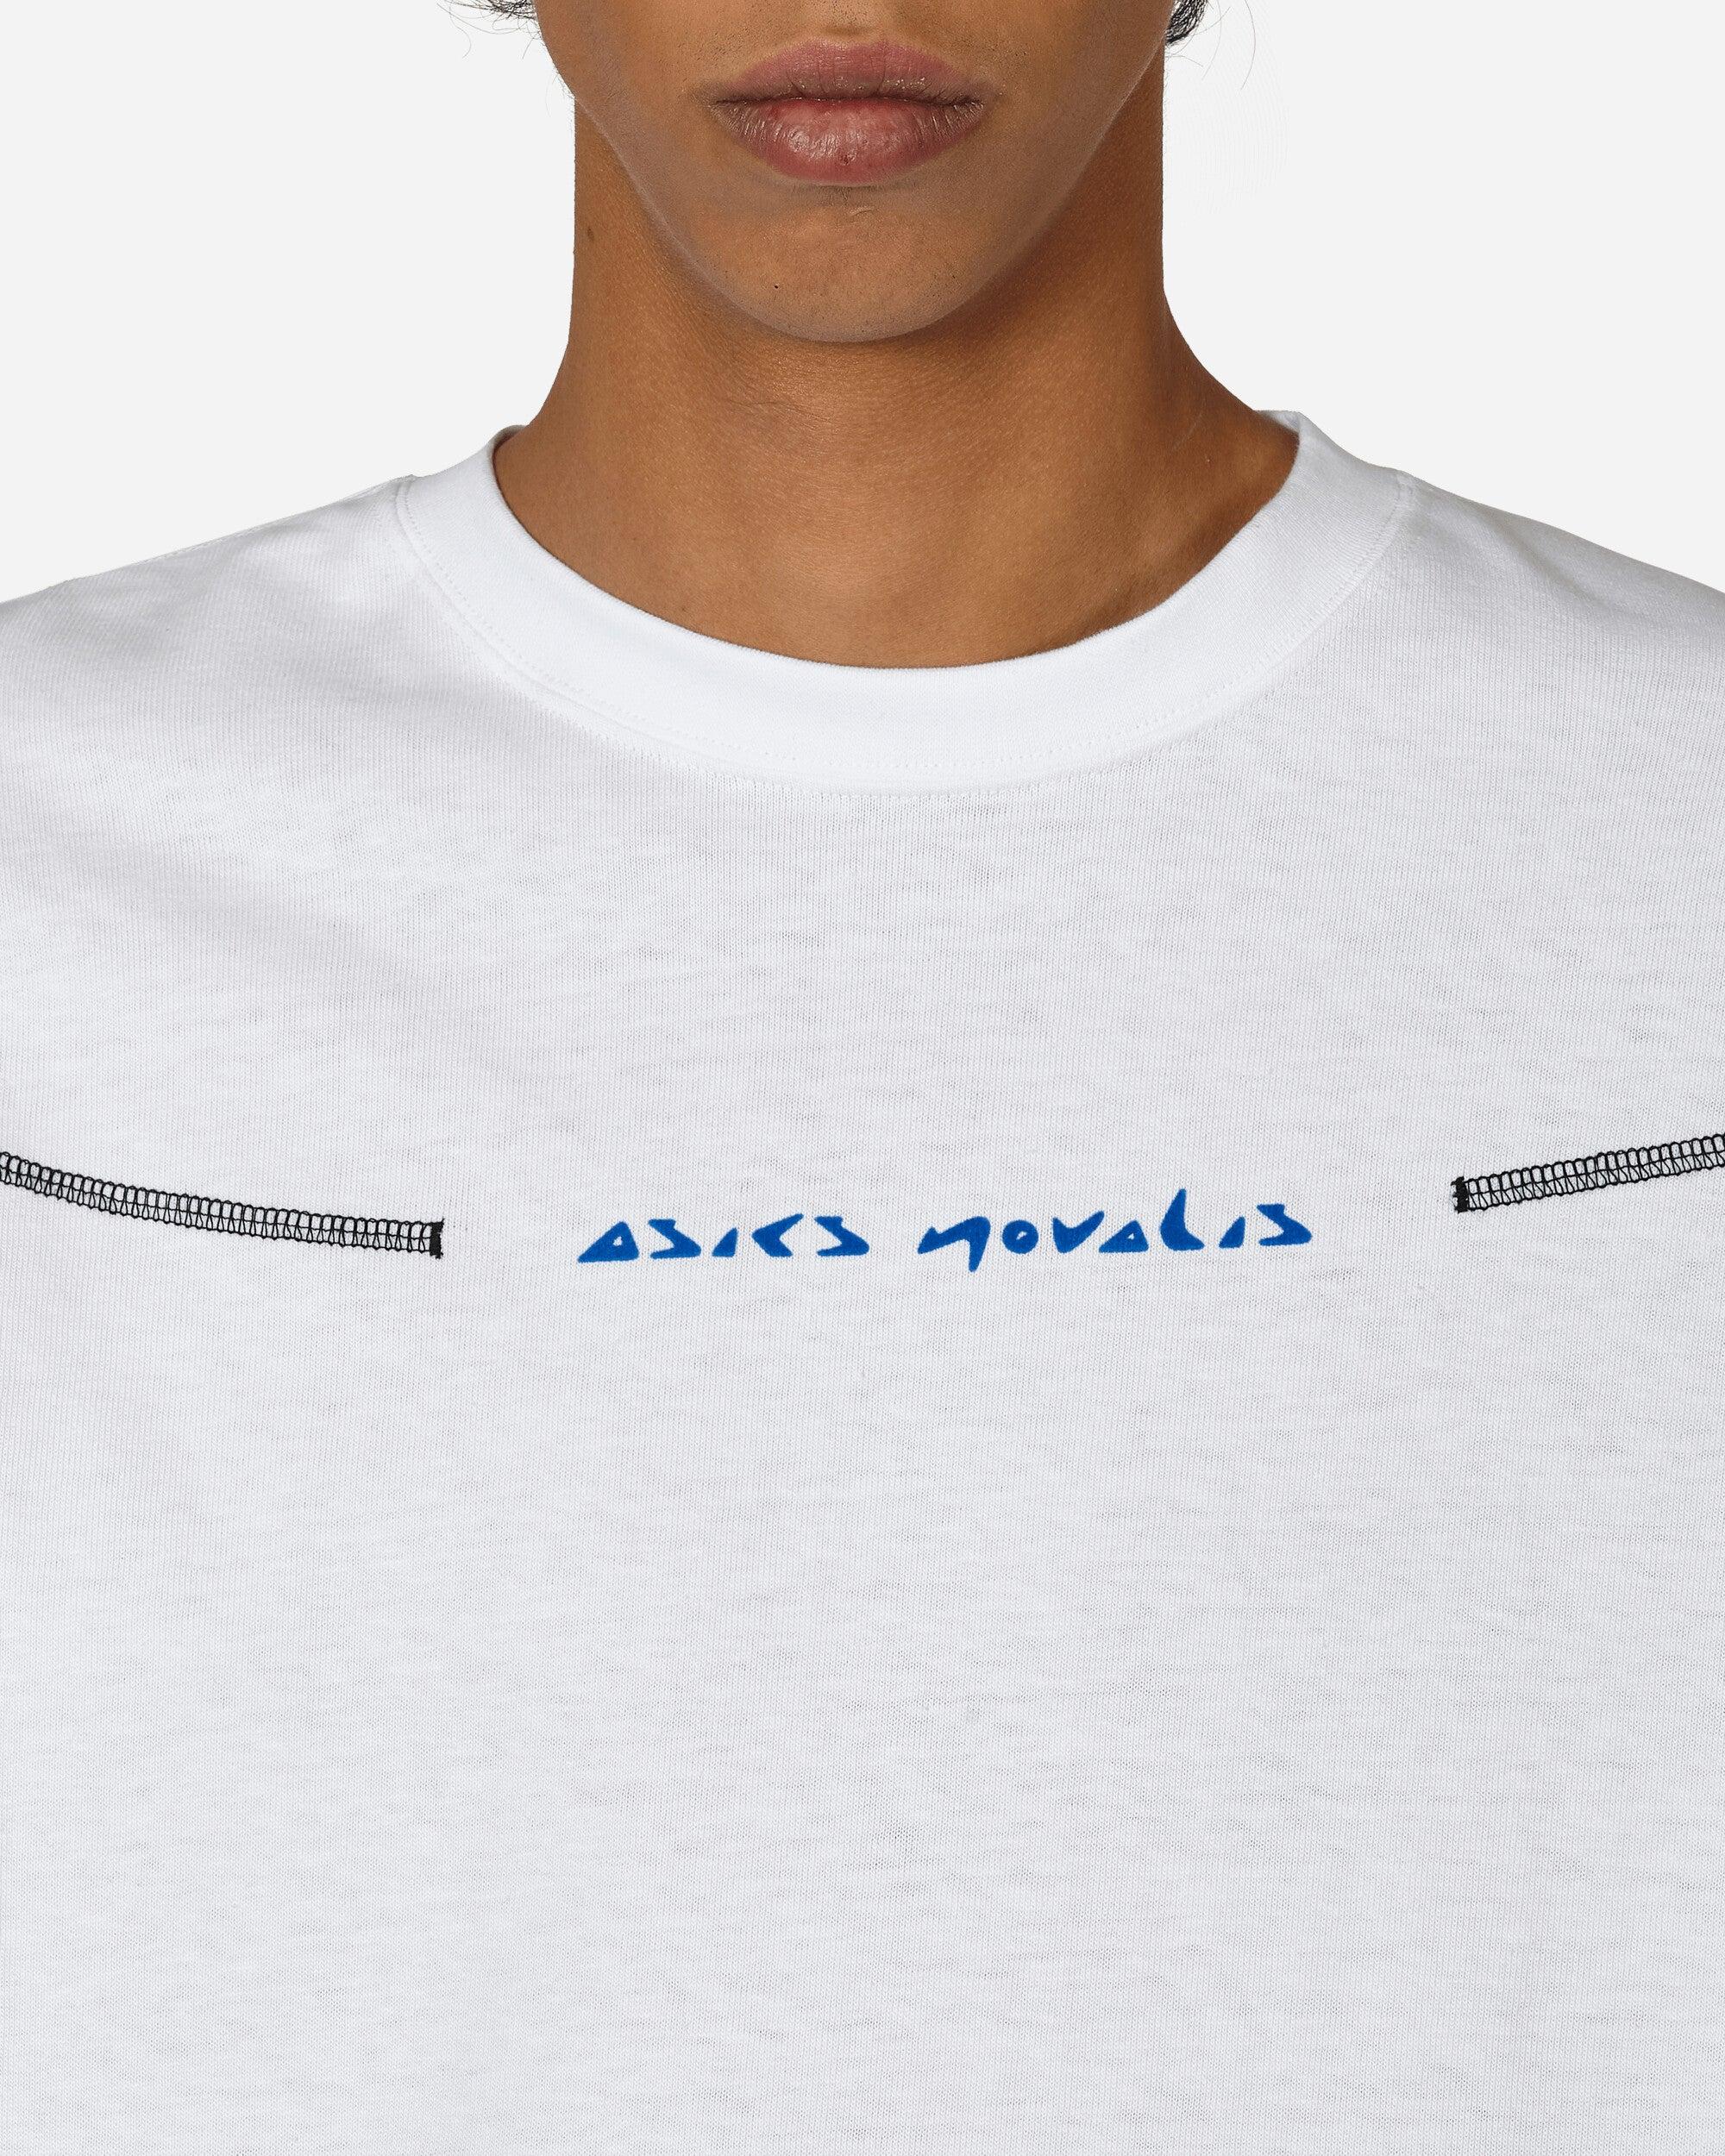 Asics Novalis Bixance Longsleeve T-shirt Optic / Obsidian Black in White  for Men | Lyst